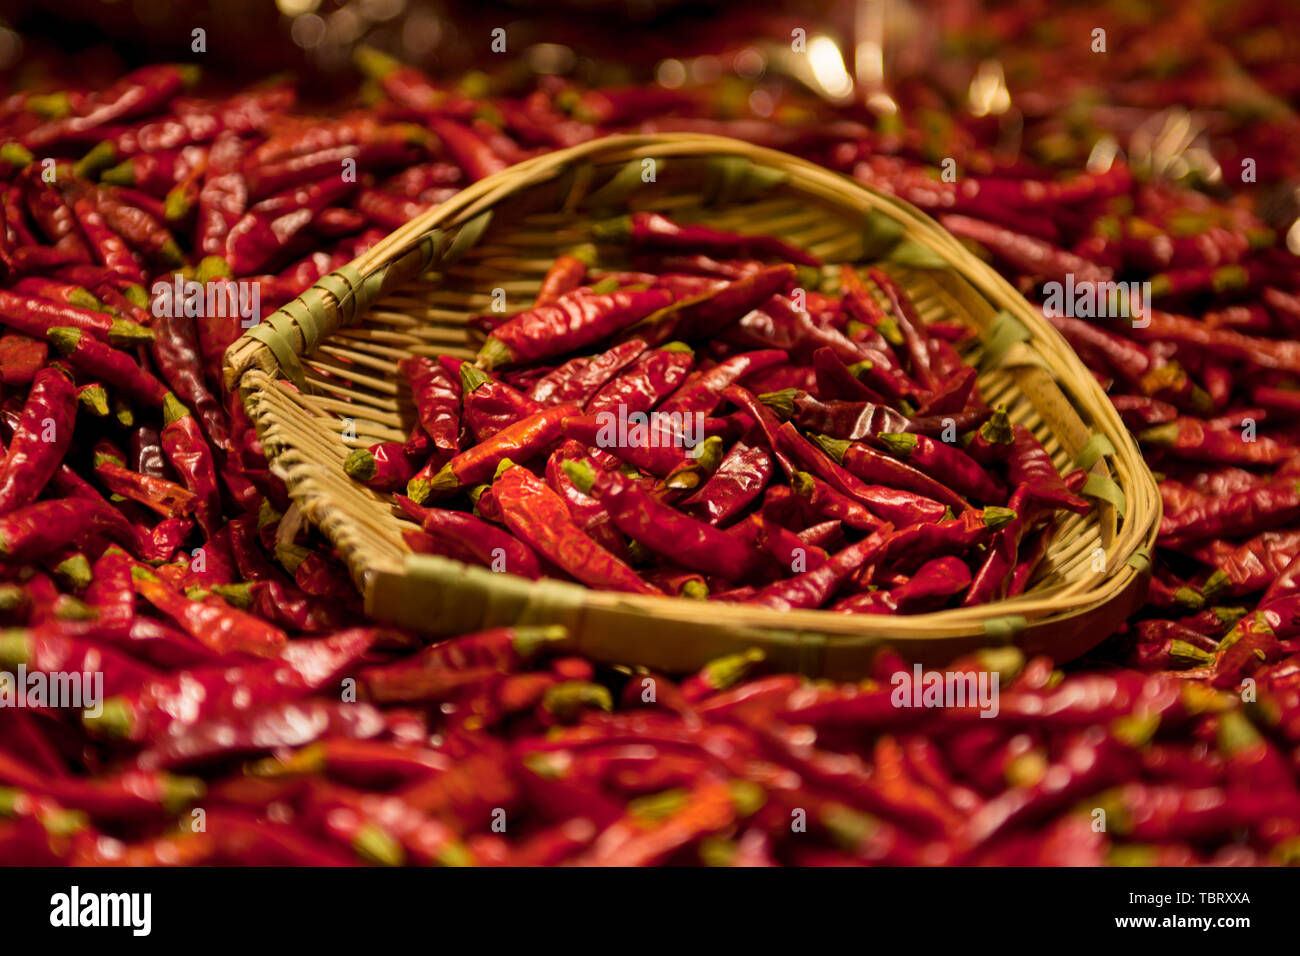 Chili peppers Lebensmittel Gewürze und Gemüse auf dem Markt heiß, heiß kochen Niemand close-up Farbe getrocknet. Gesunde Haufen Obst, Chili peppers Stockfoto